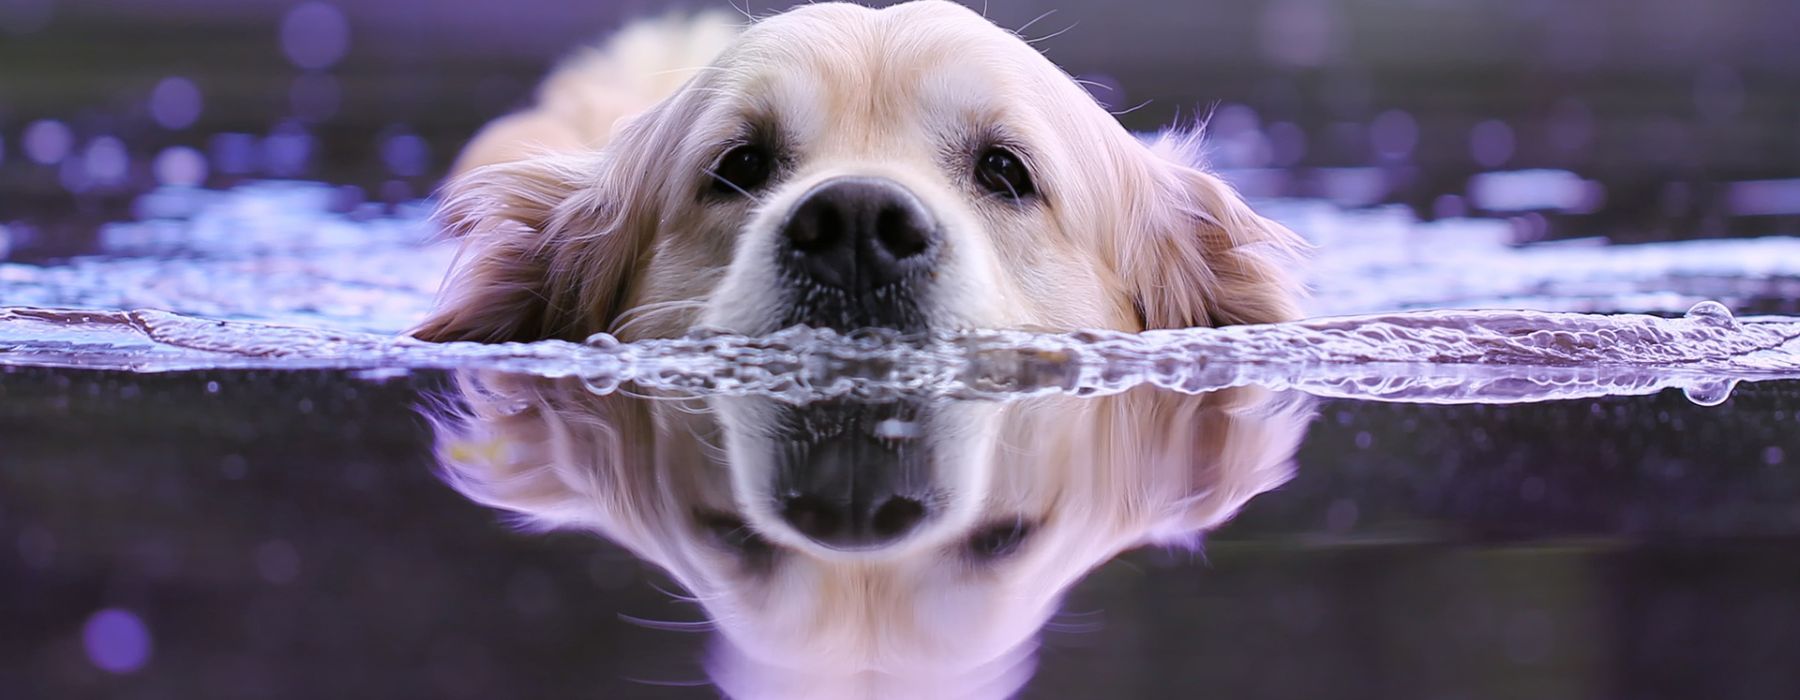 Wasser-Hund.jpg